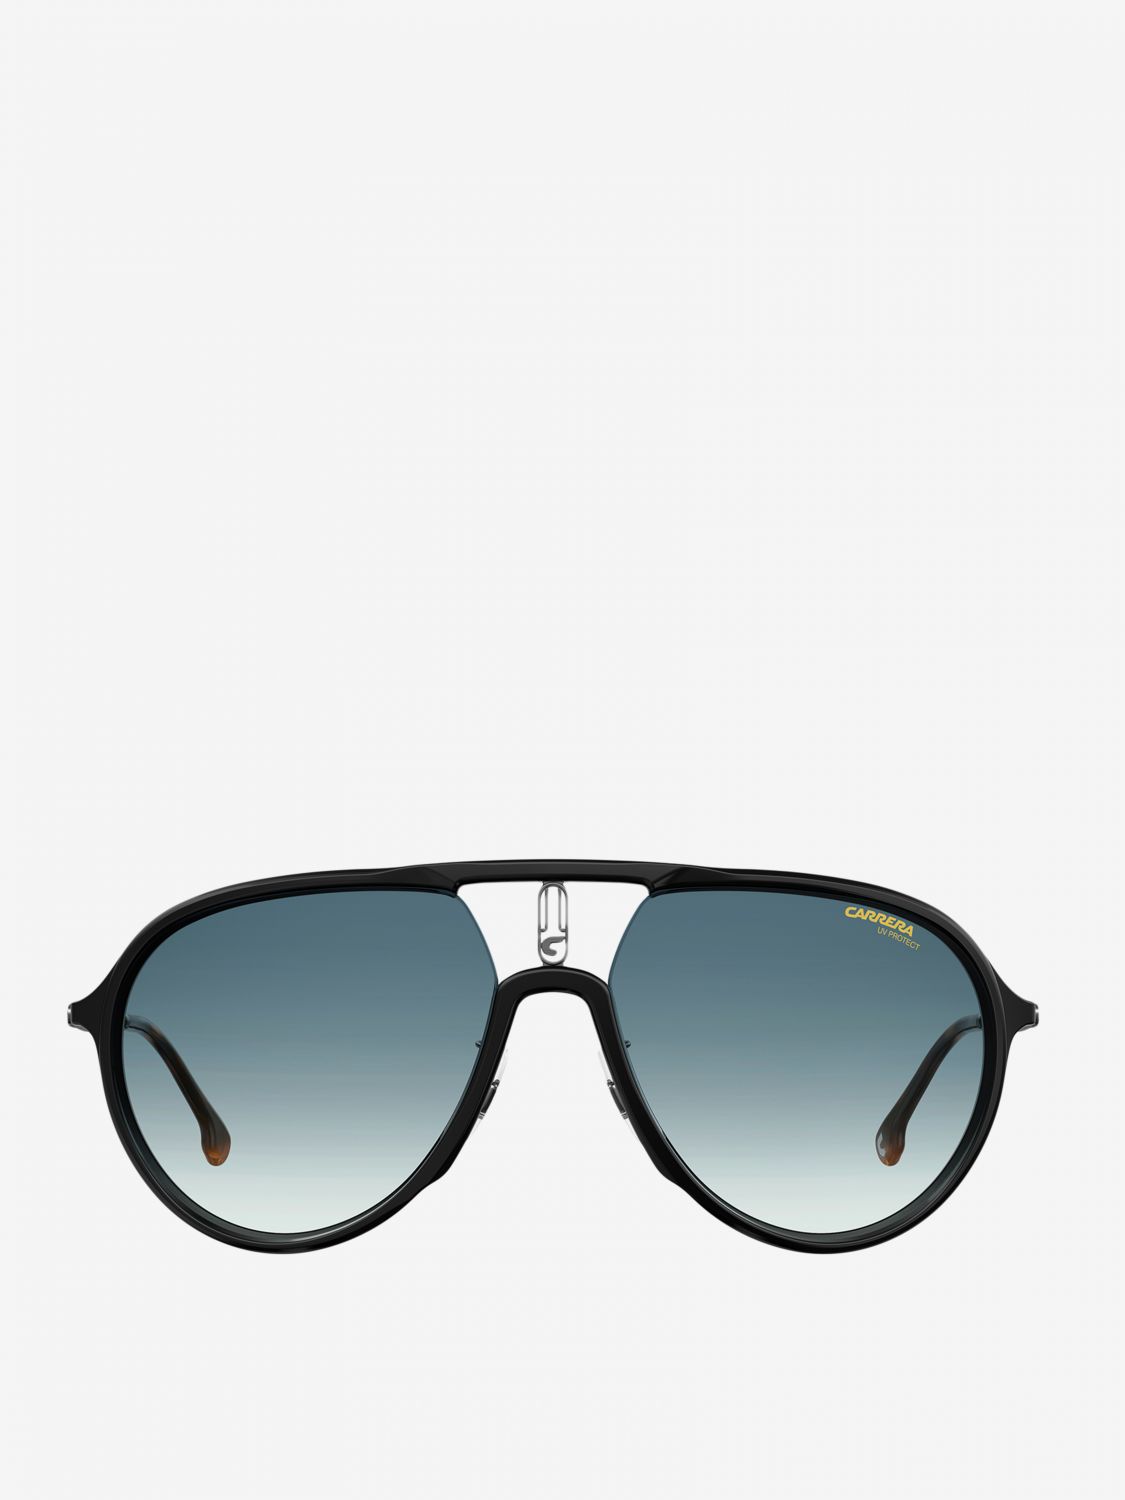 CARRERA: Glasses women - Black | Glasses Carrera CARRERA 1026/S GIGLIO.COM